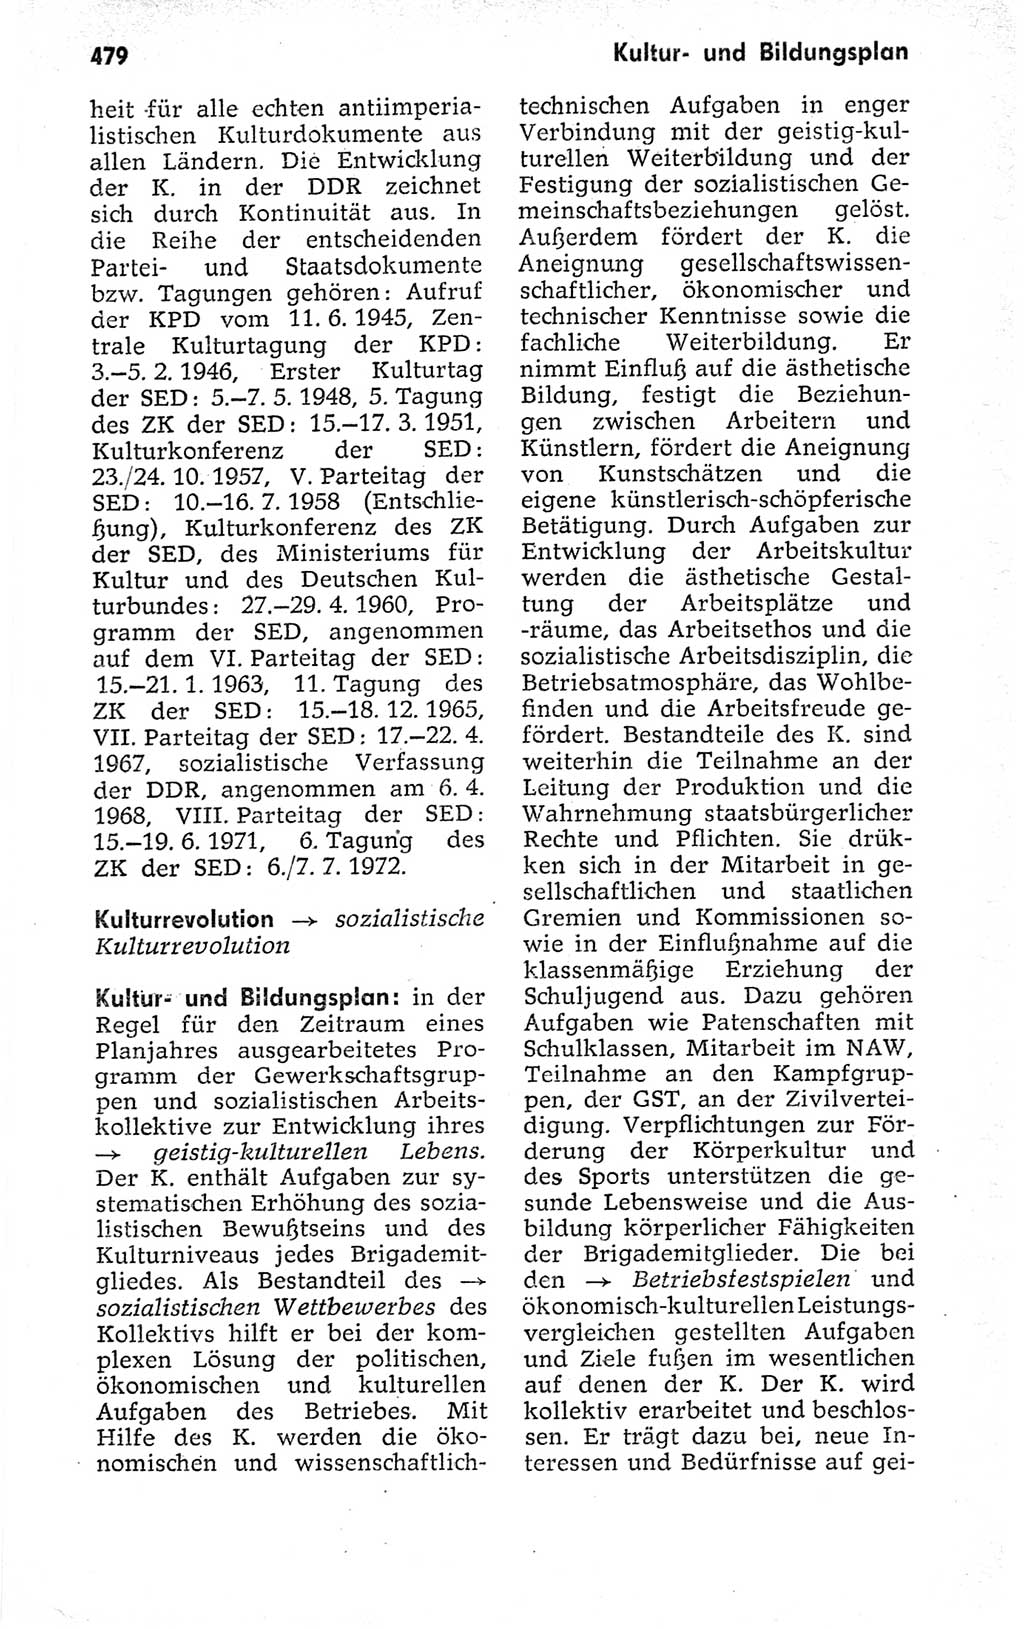 Kleines politisches Wörterbuch [Deutsche Demokratische Republik (DDR)] 1973, Seite 479 (Kl. pol. Wb. DDR 1973, S. 479)